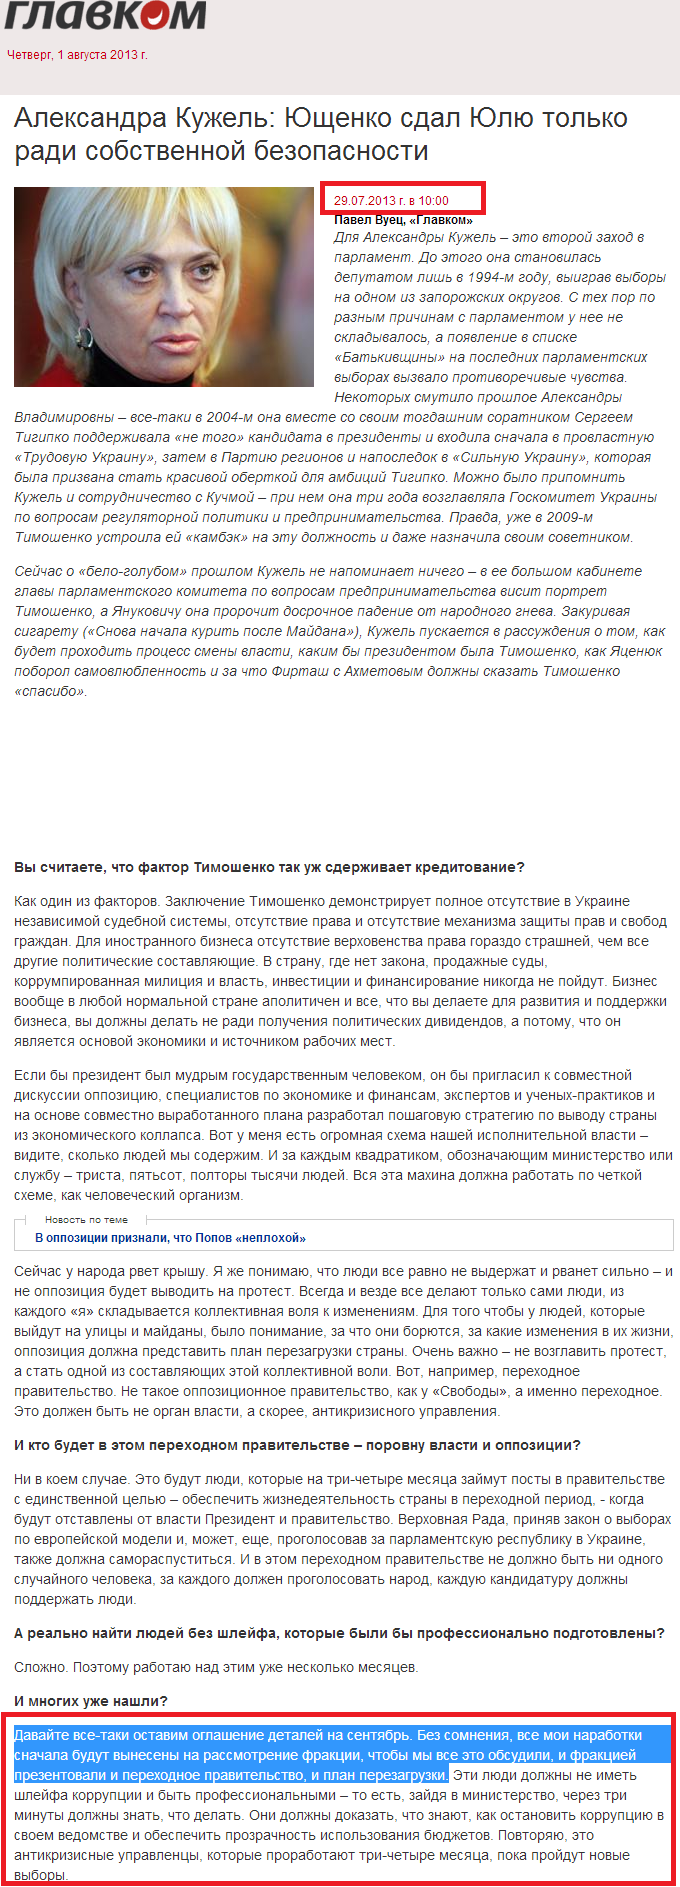 http://glavcom.ua/articles/12931.html